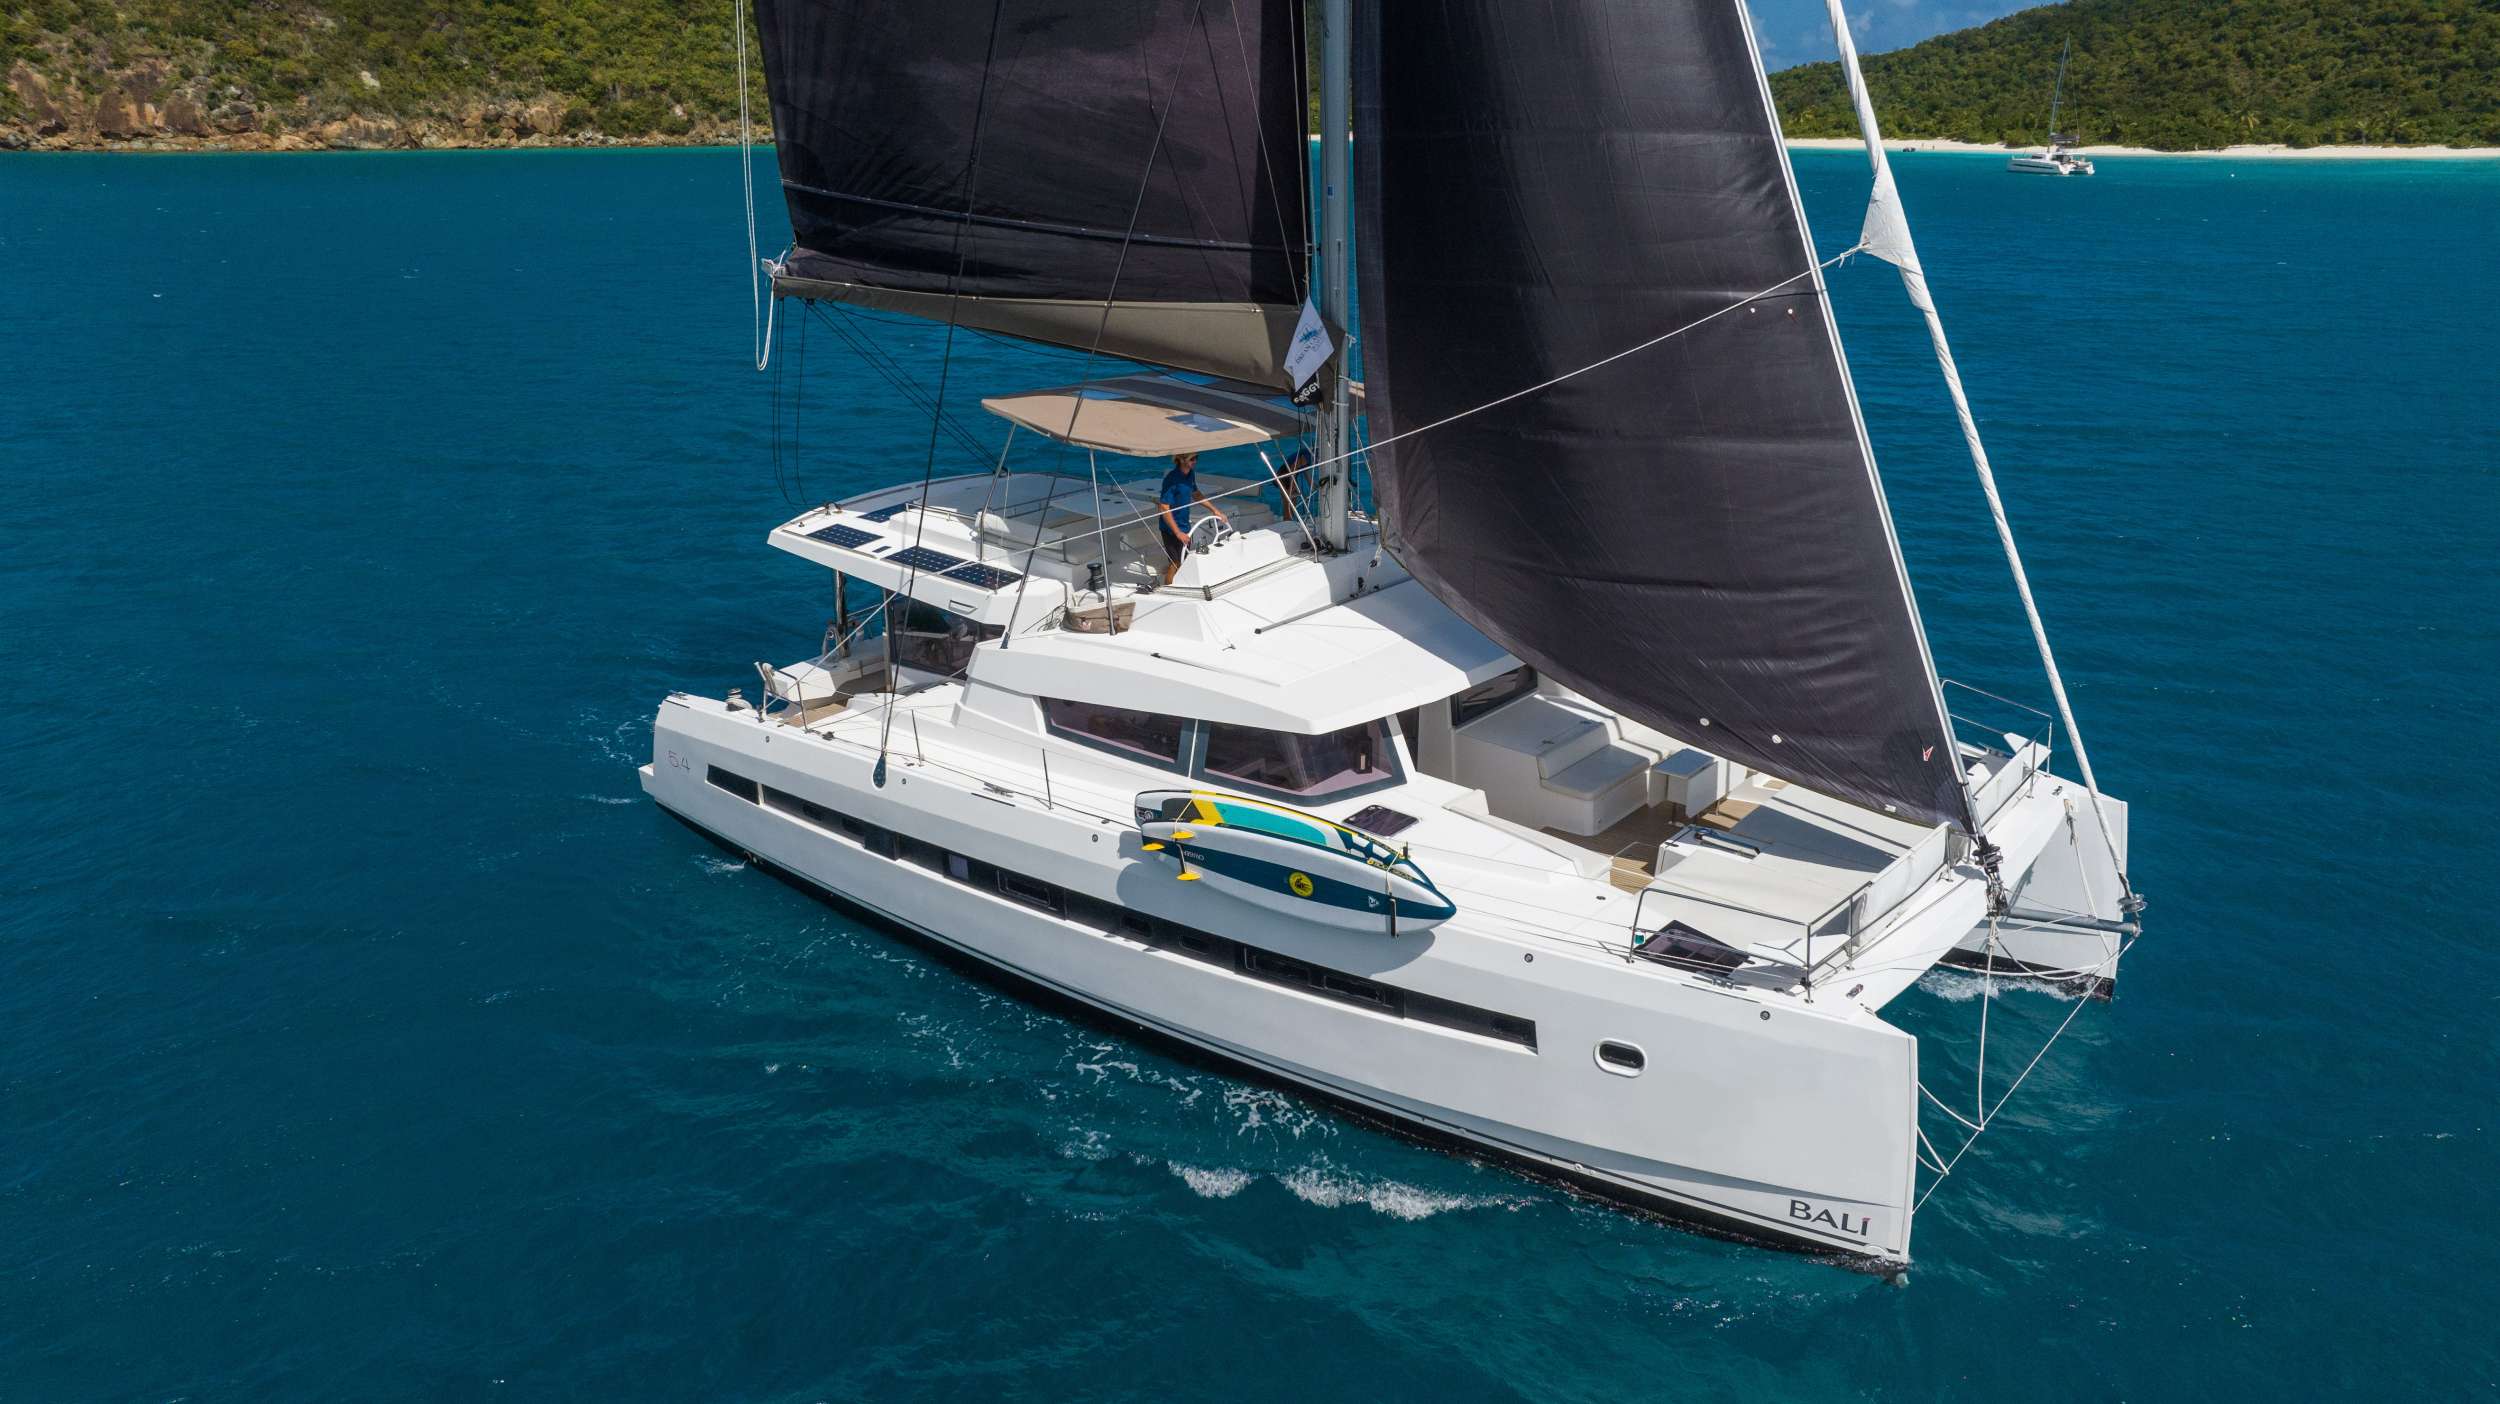 SUN DAZE 5.4 - Catamaran Charter Guadeloupe & Boat hire in Caribbean 1